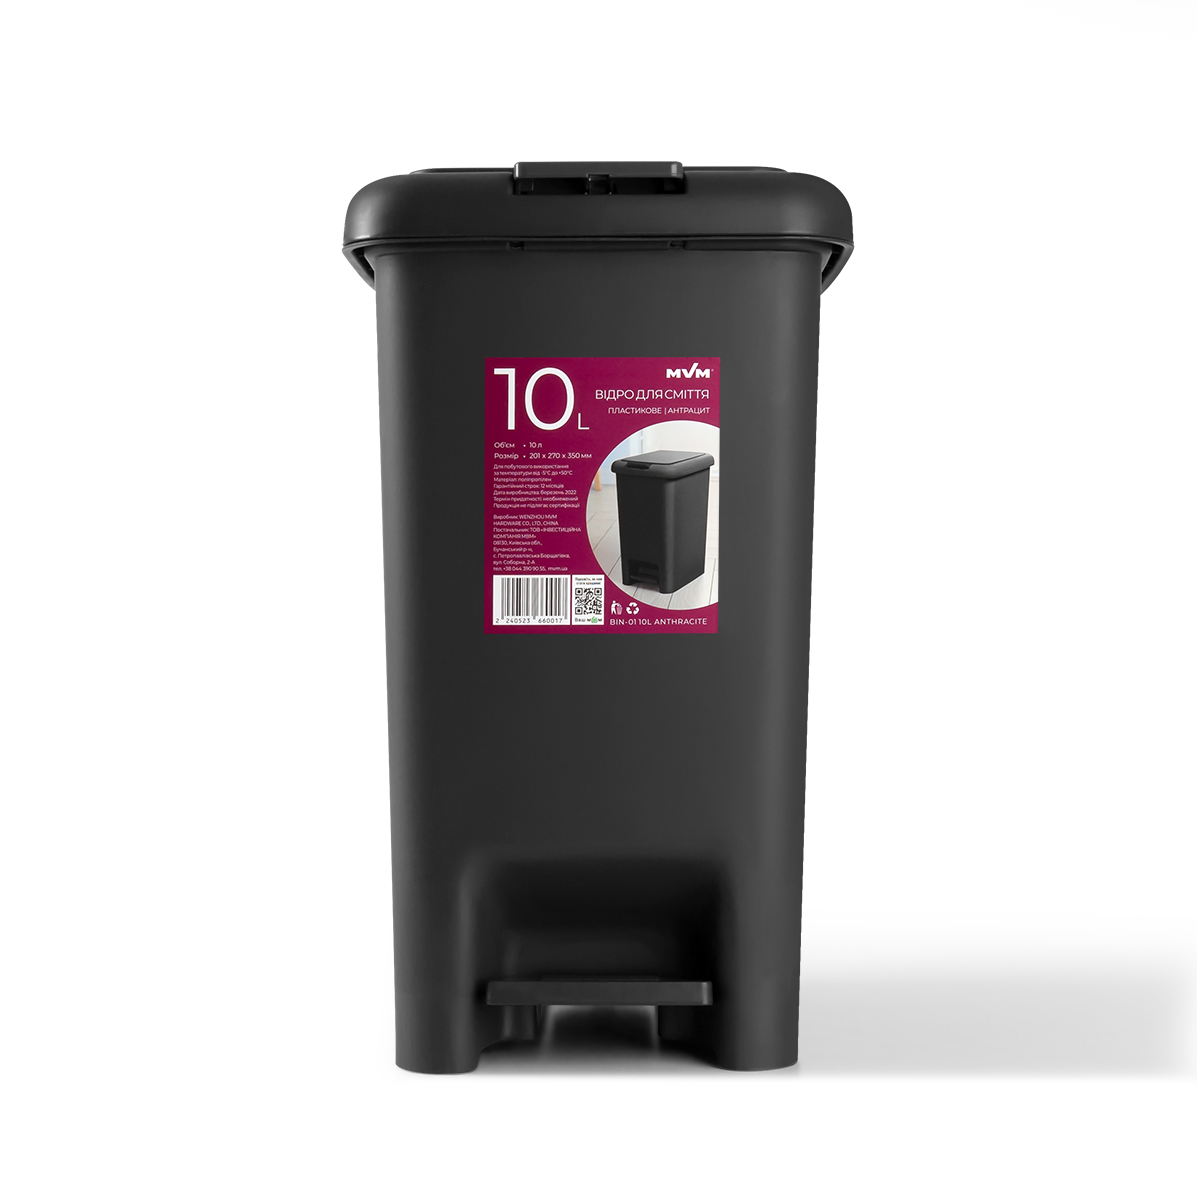 Ведро для мусора на 10л прямоугольное MVM с крышкой и педалью 350x270x201мм пластиковое черное BIN-01 10L ANTHRACITE